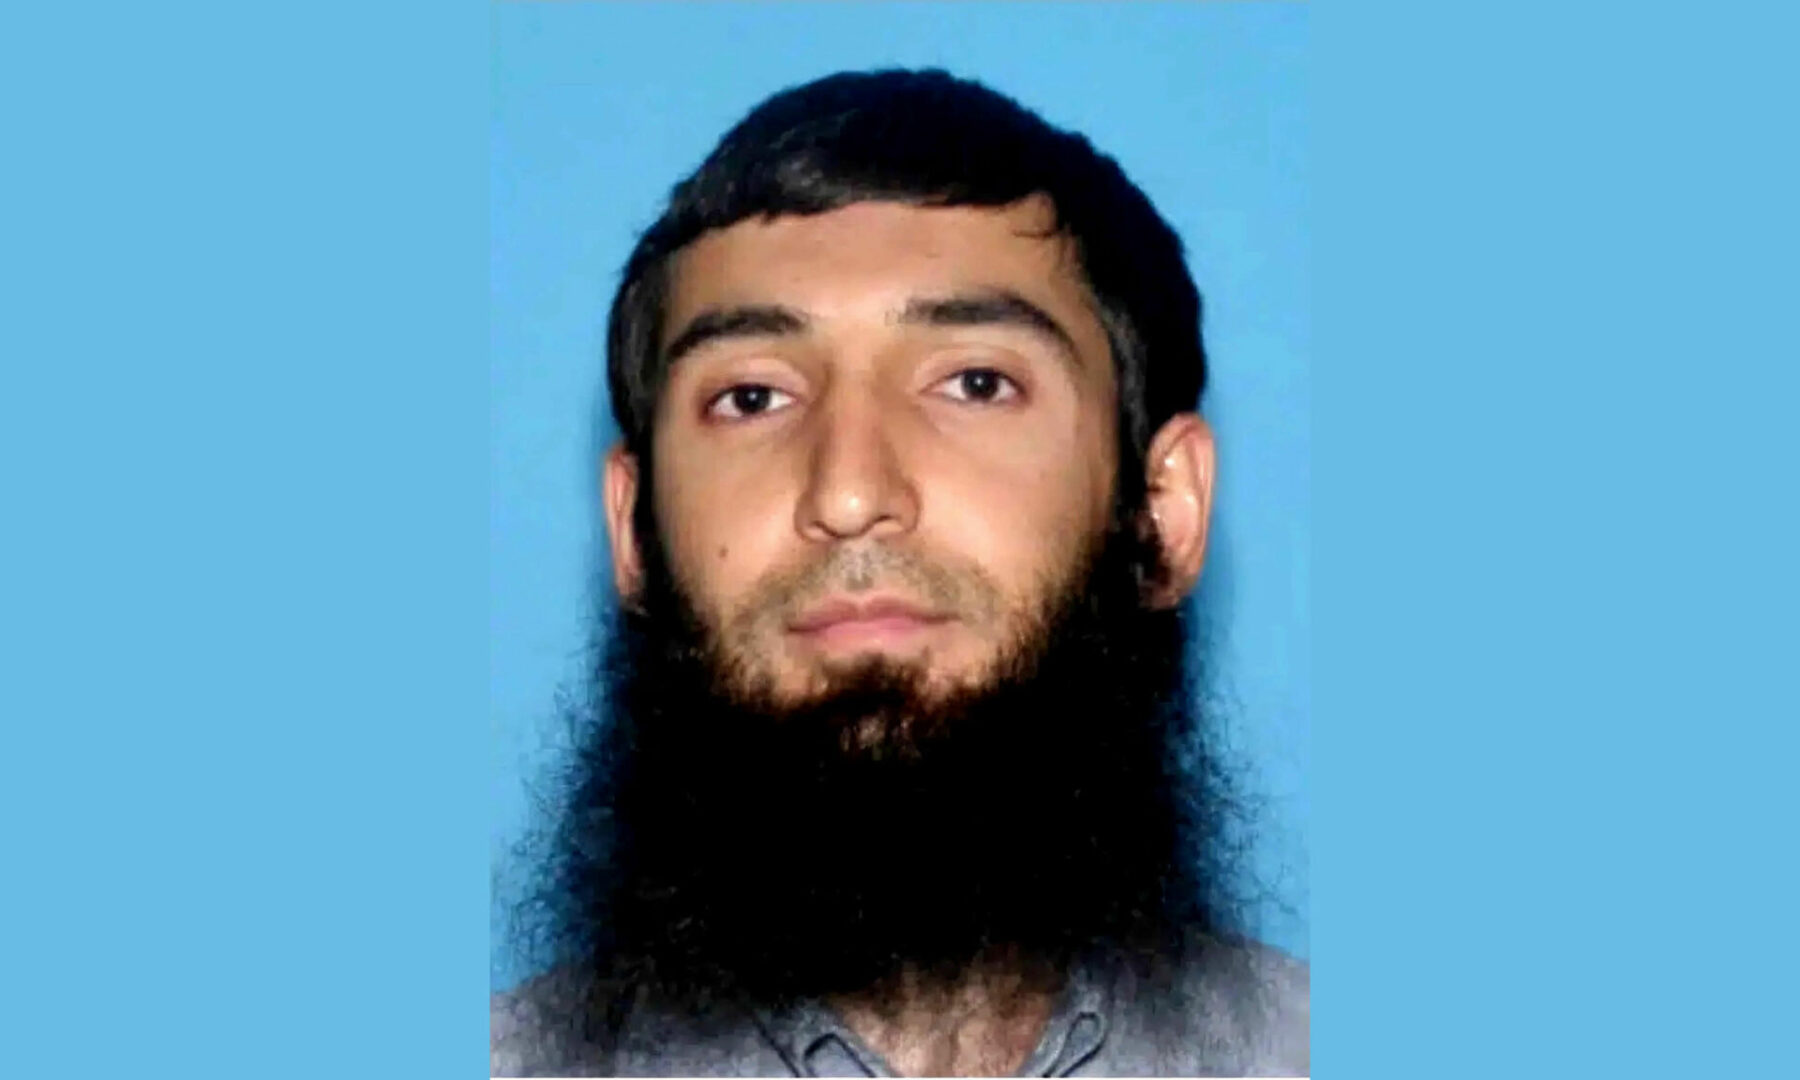 Diez cadenas perpetuas para el uzbeco que atropelló y mató a ocho personas en Nueva York